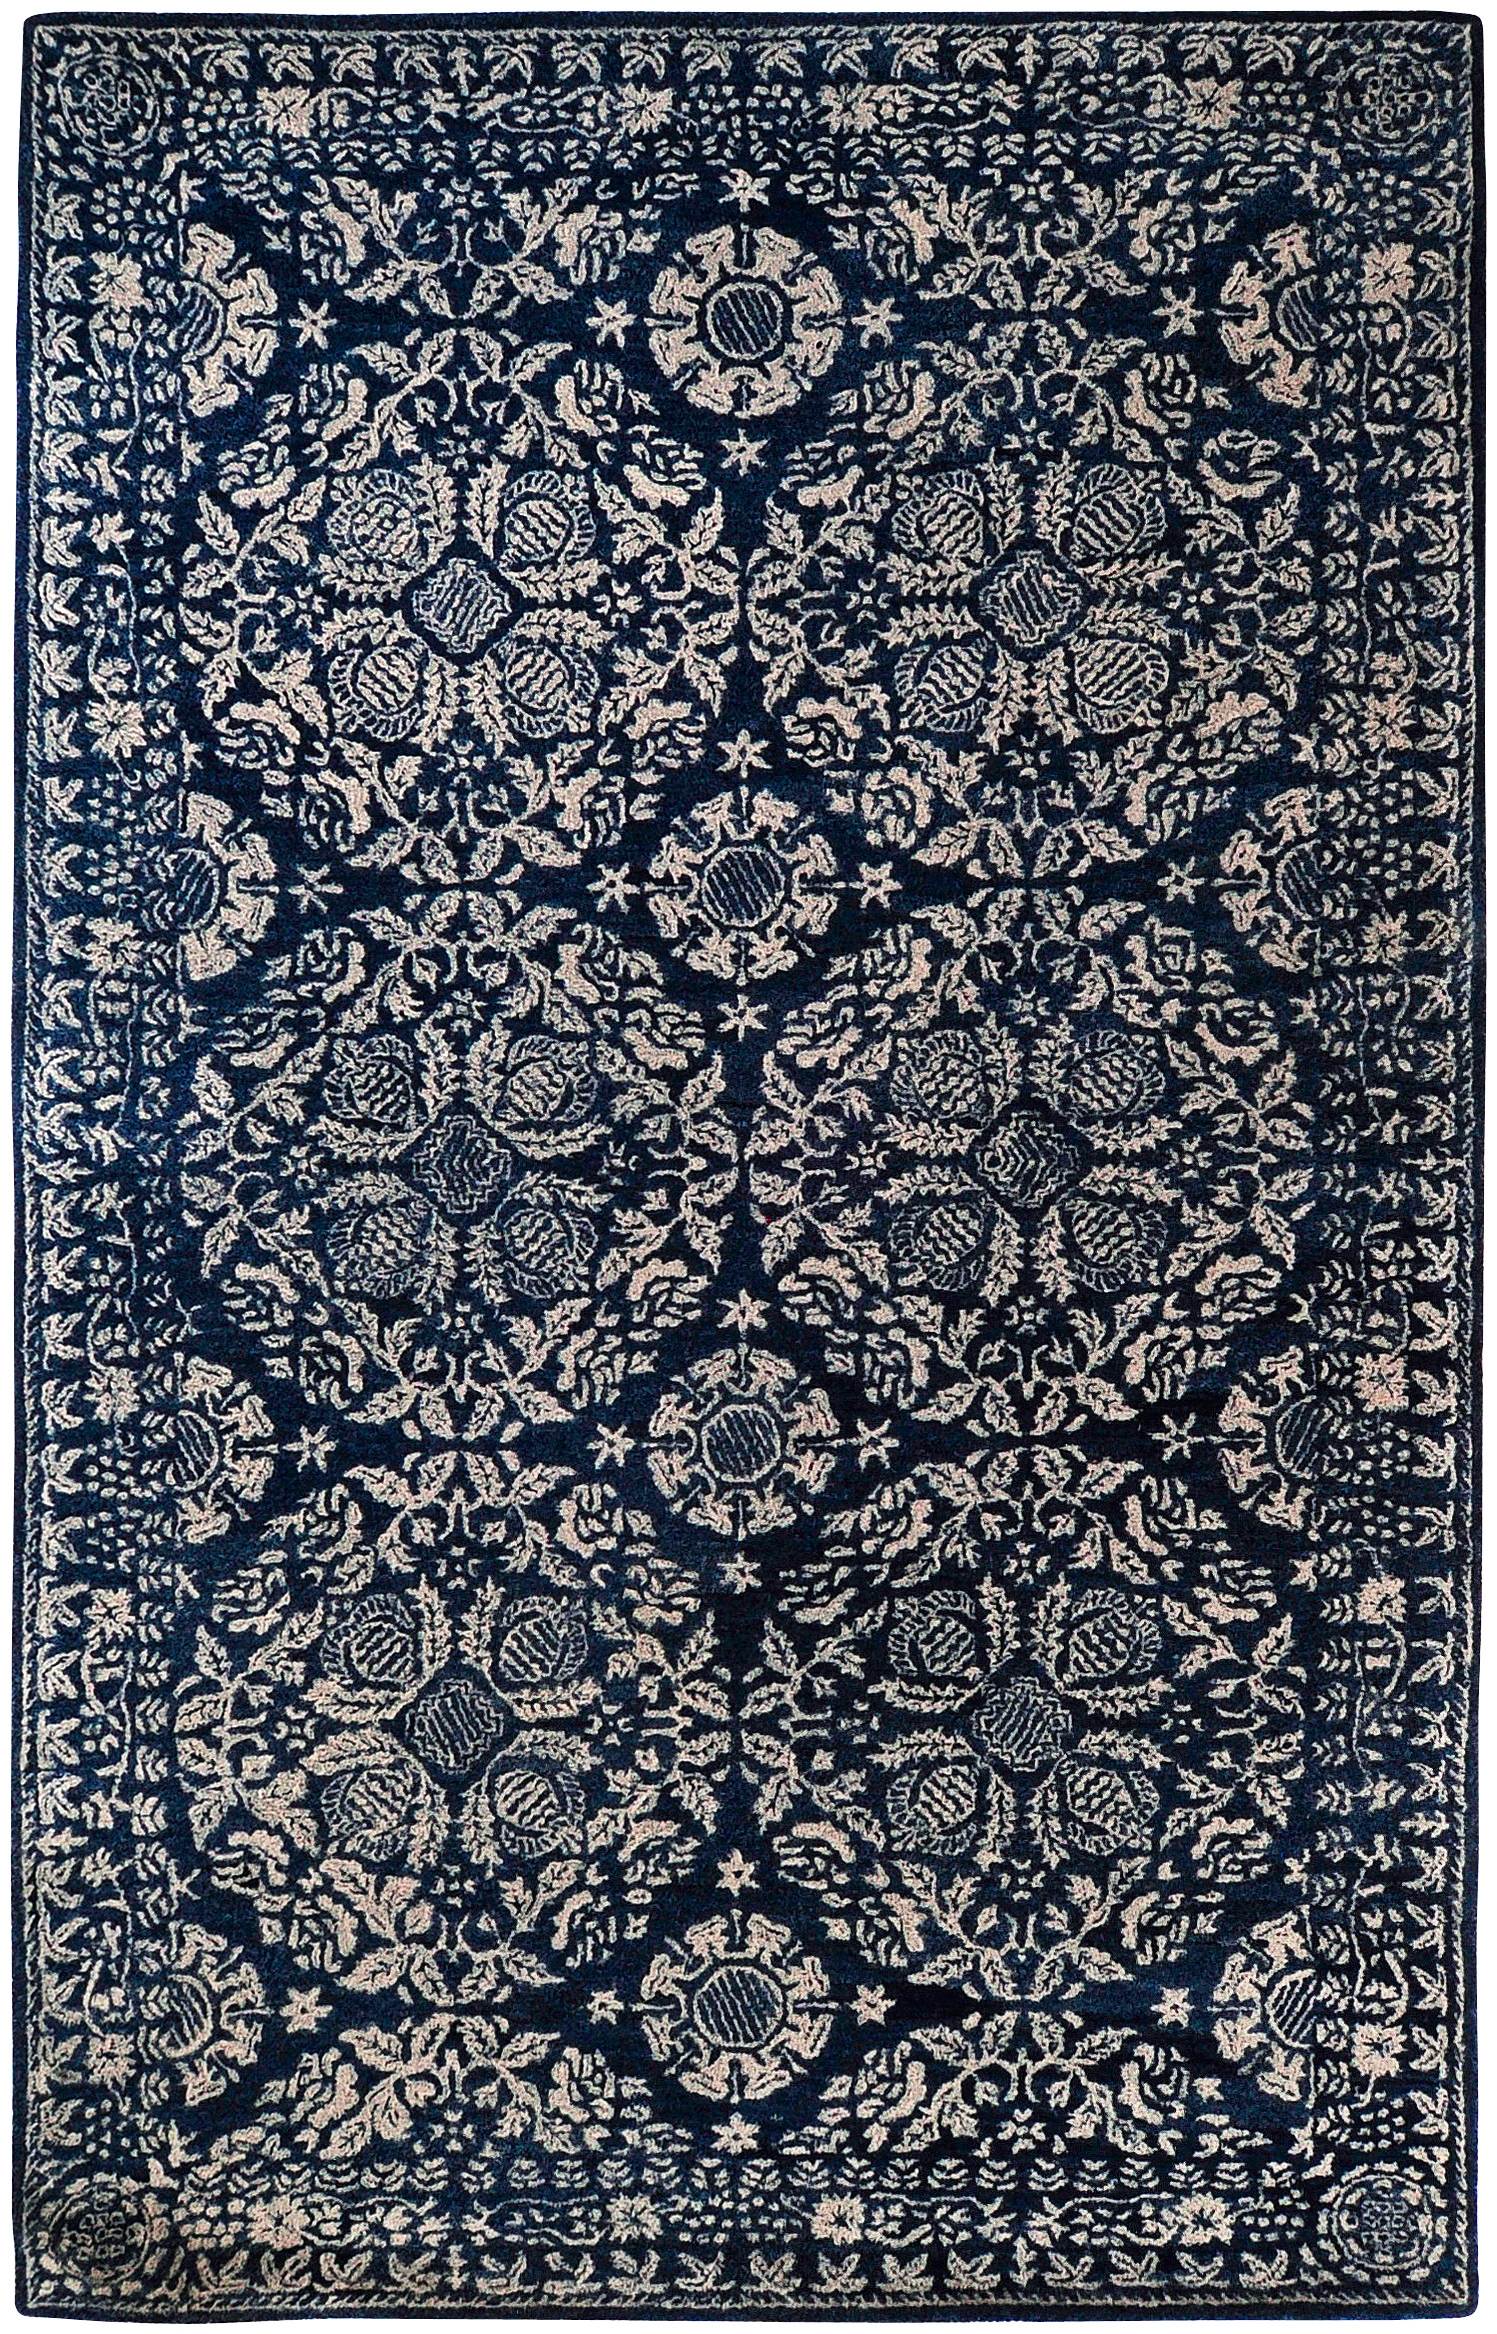 Smithsonian Rug, 9' x 13' - Image 0